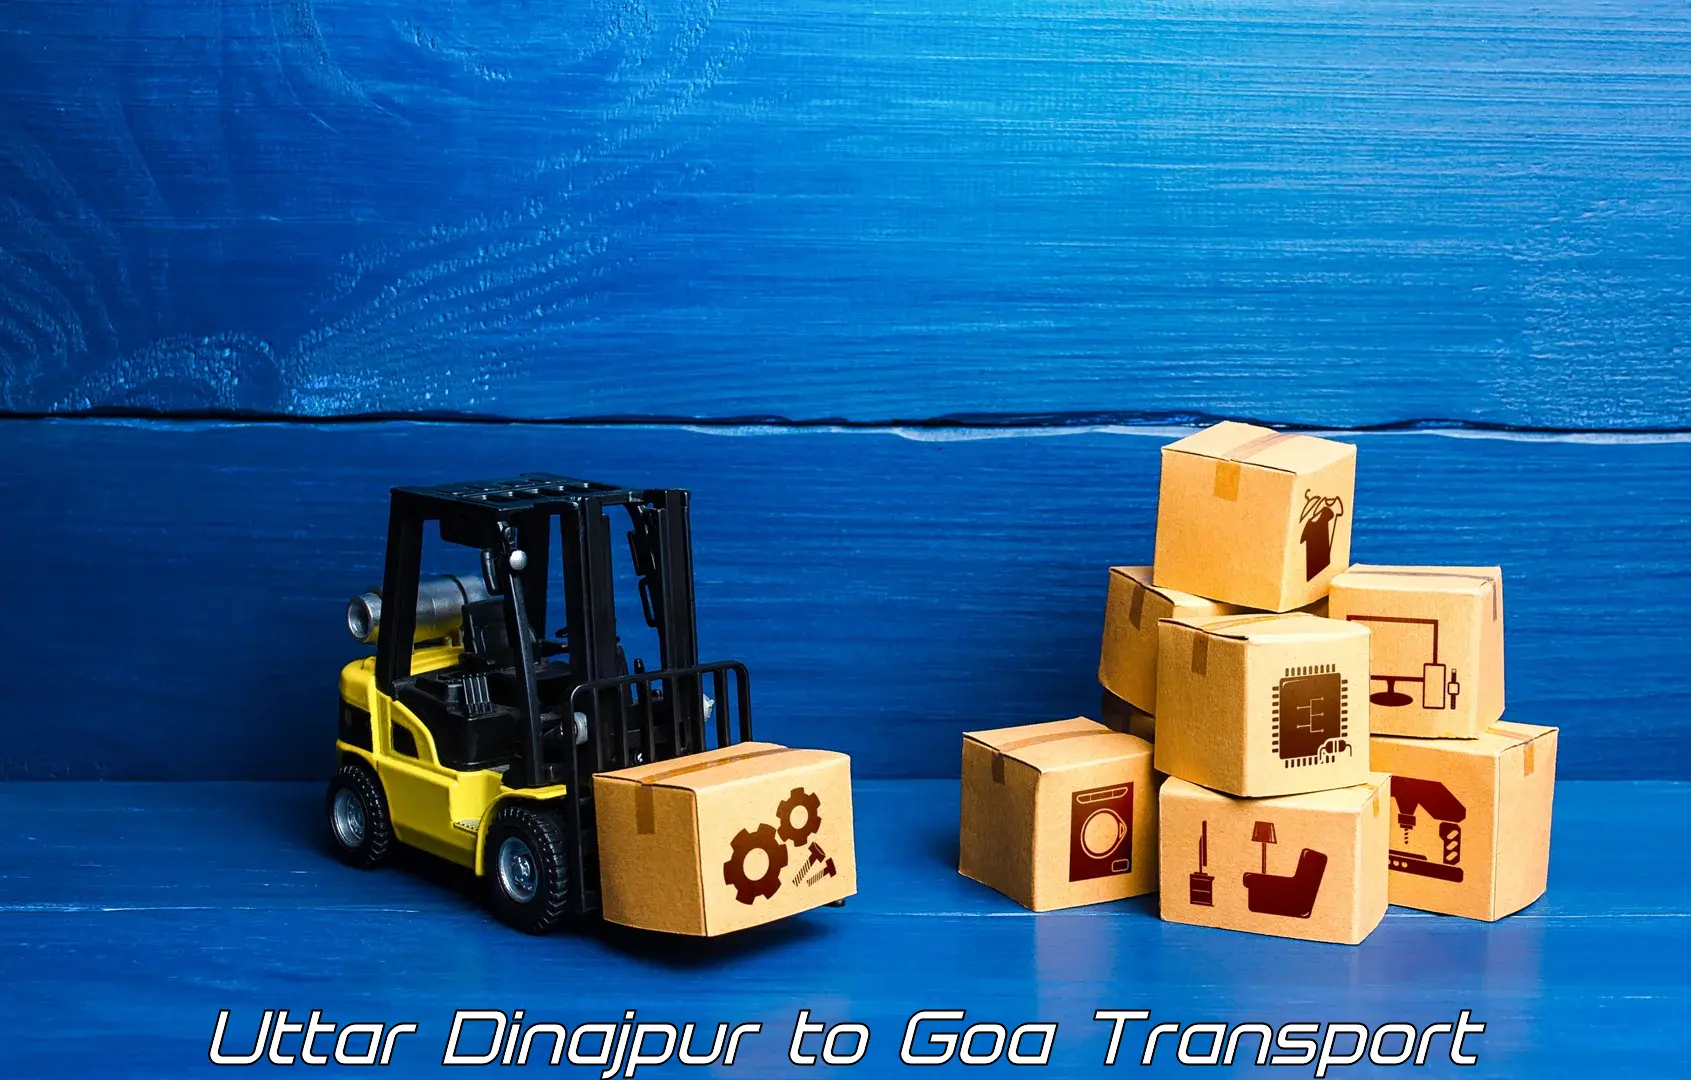 Air freight transport services Uttar Dinajpur to Mormugao Port